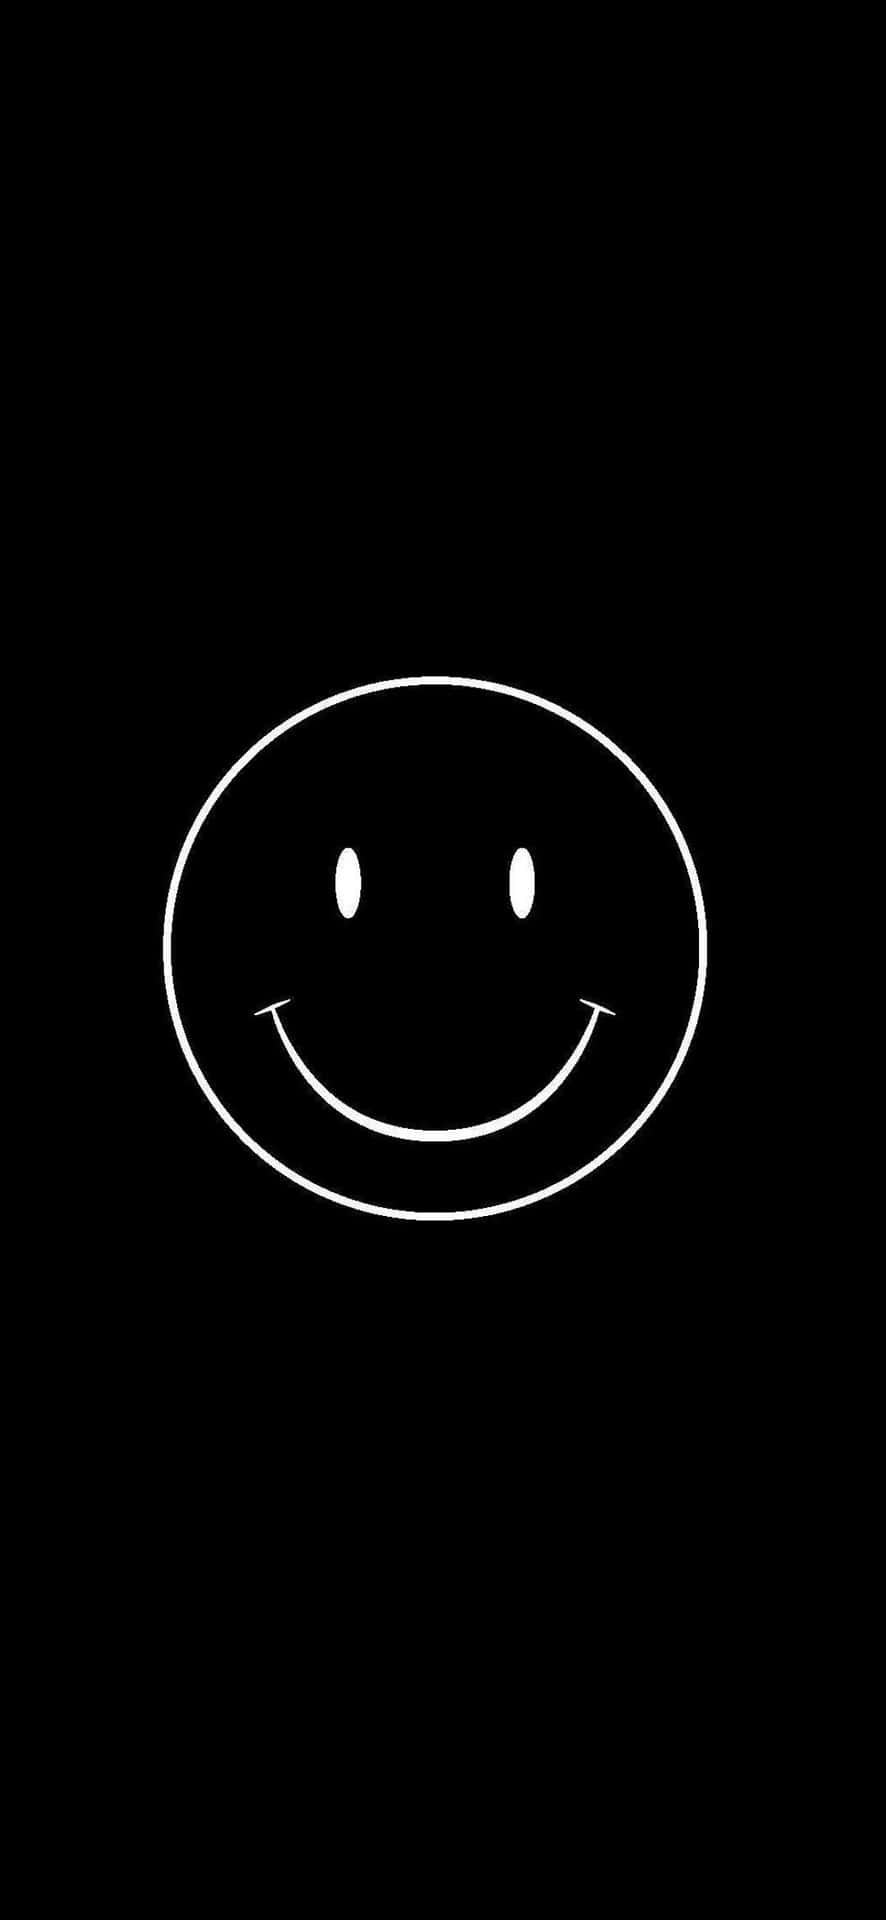 Smile Emoji Black White Drawing Background